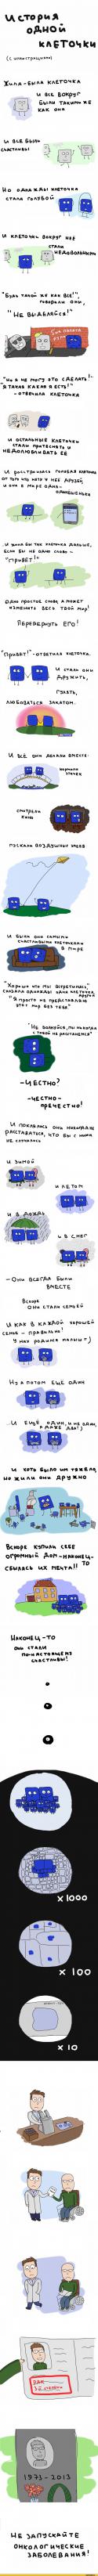 51637_dlinnopost-Istoriya-otnosheniya-lyubov-907234.